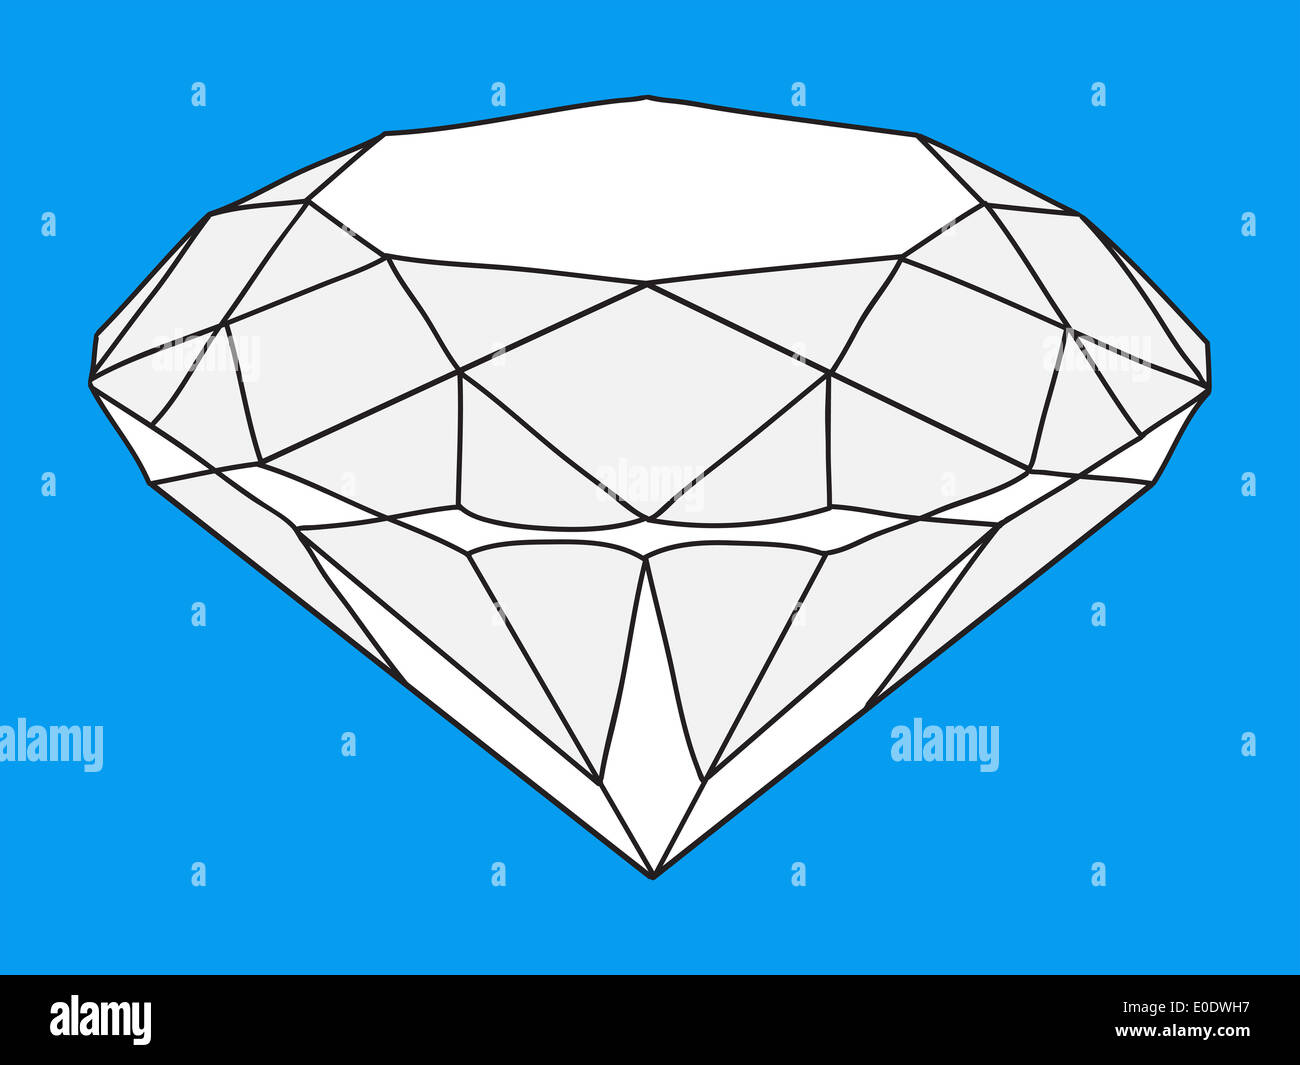 Diamond illustration Stock Photo